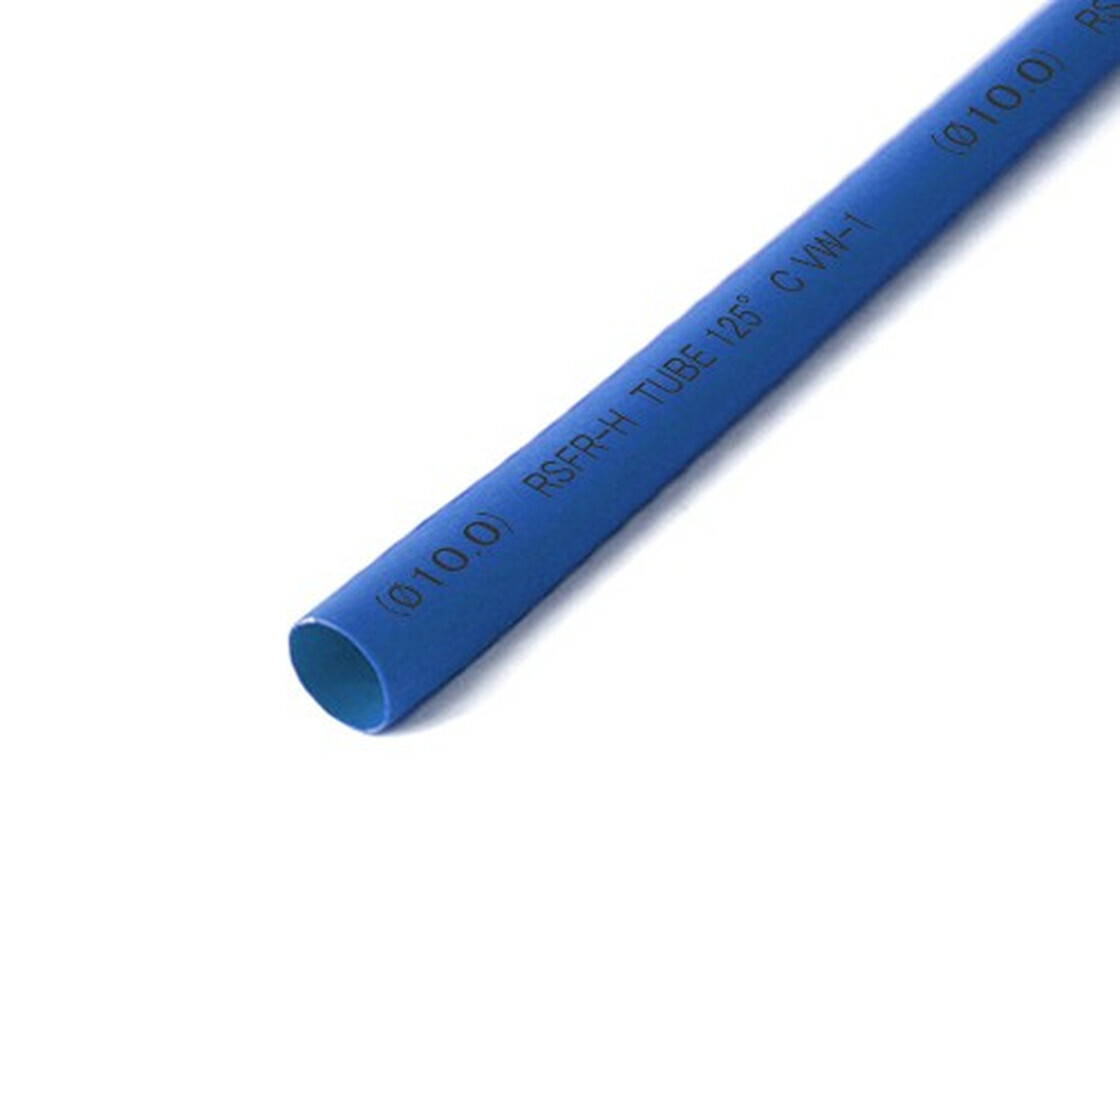 Performance Silikon Schlauch universal Länge 1M blau 3mm kaufen